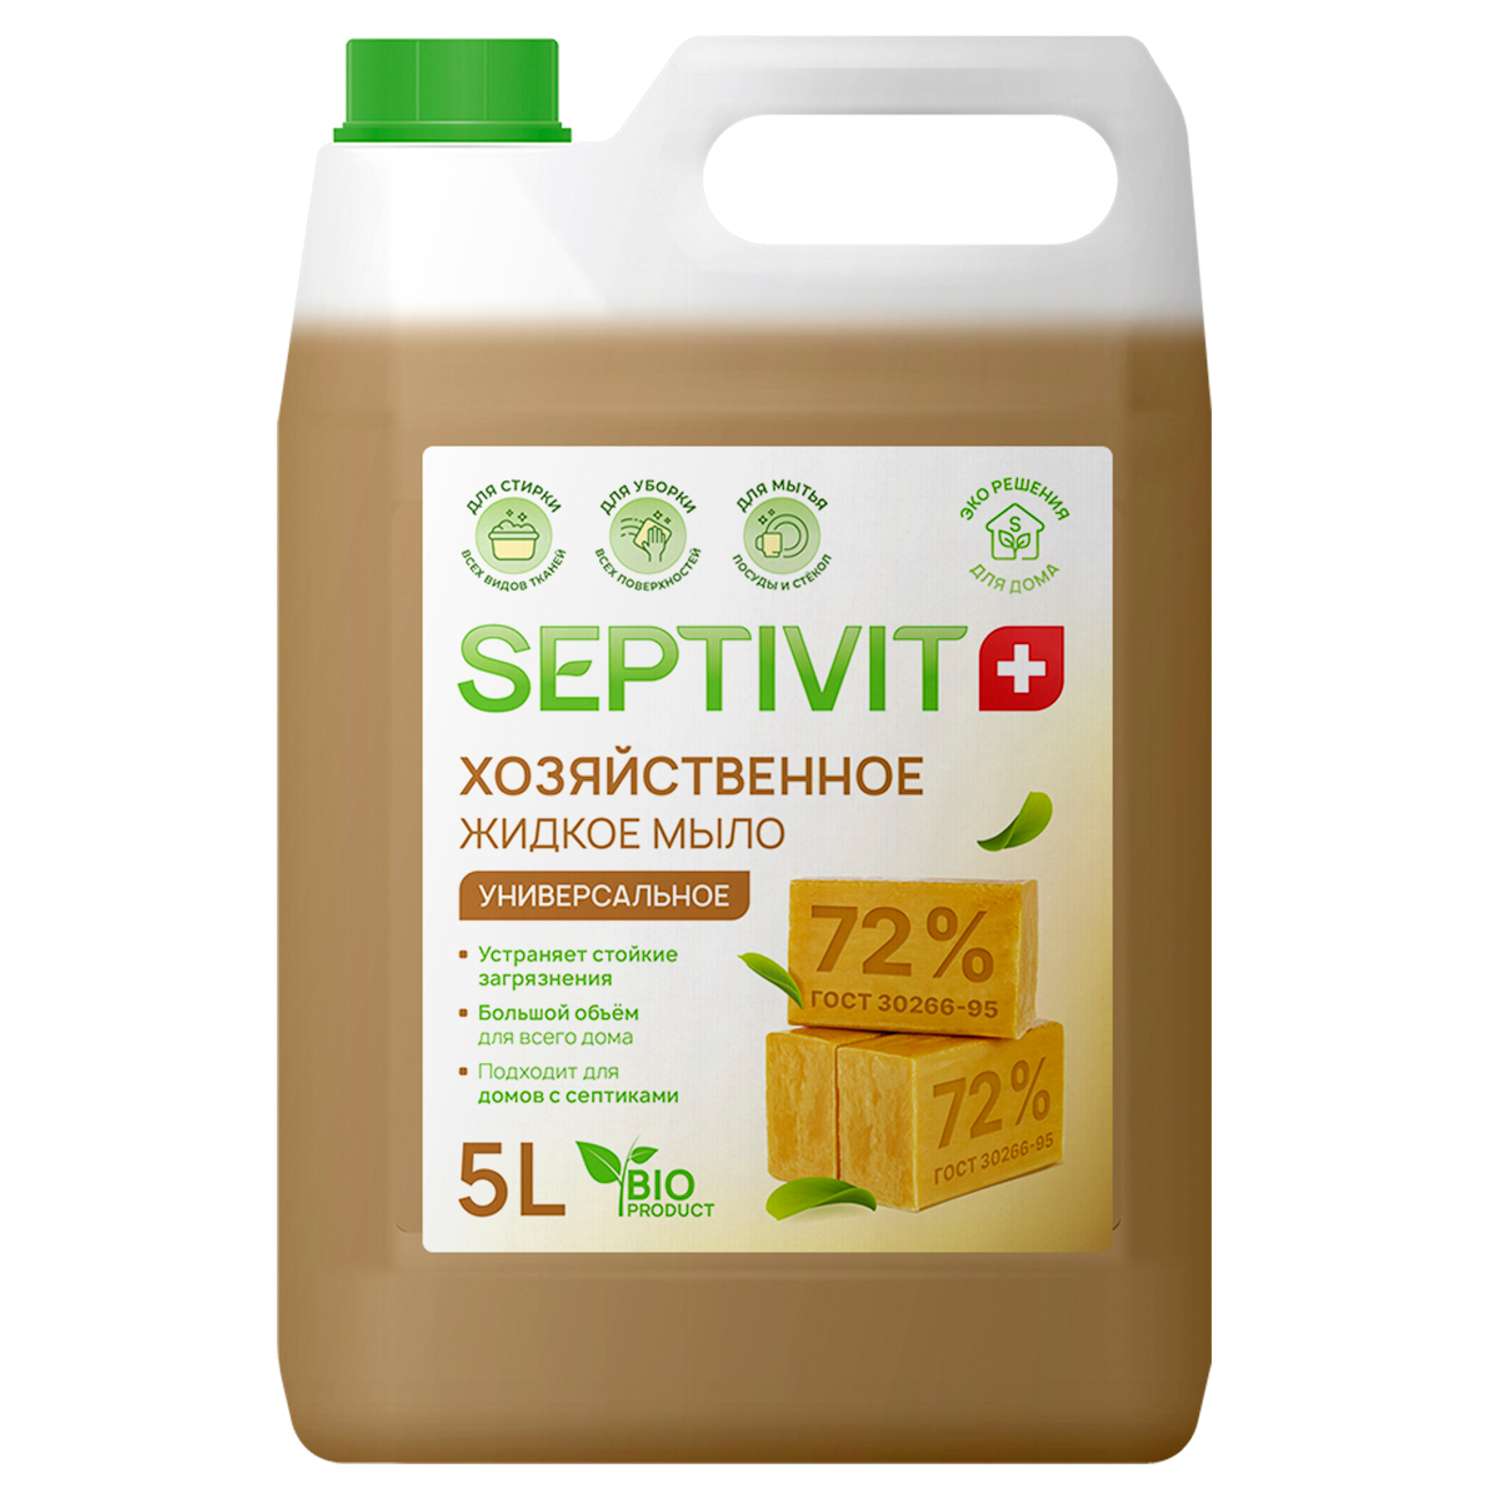 Жидкое мыло SEPTIVIT Premium Мыло хозяйственное 5л - фото 1